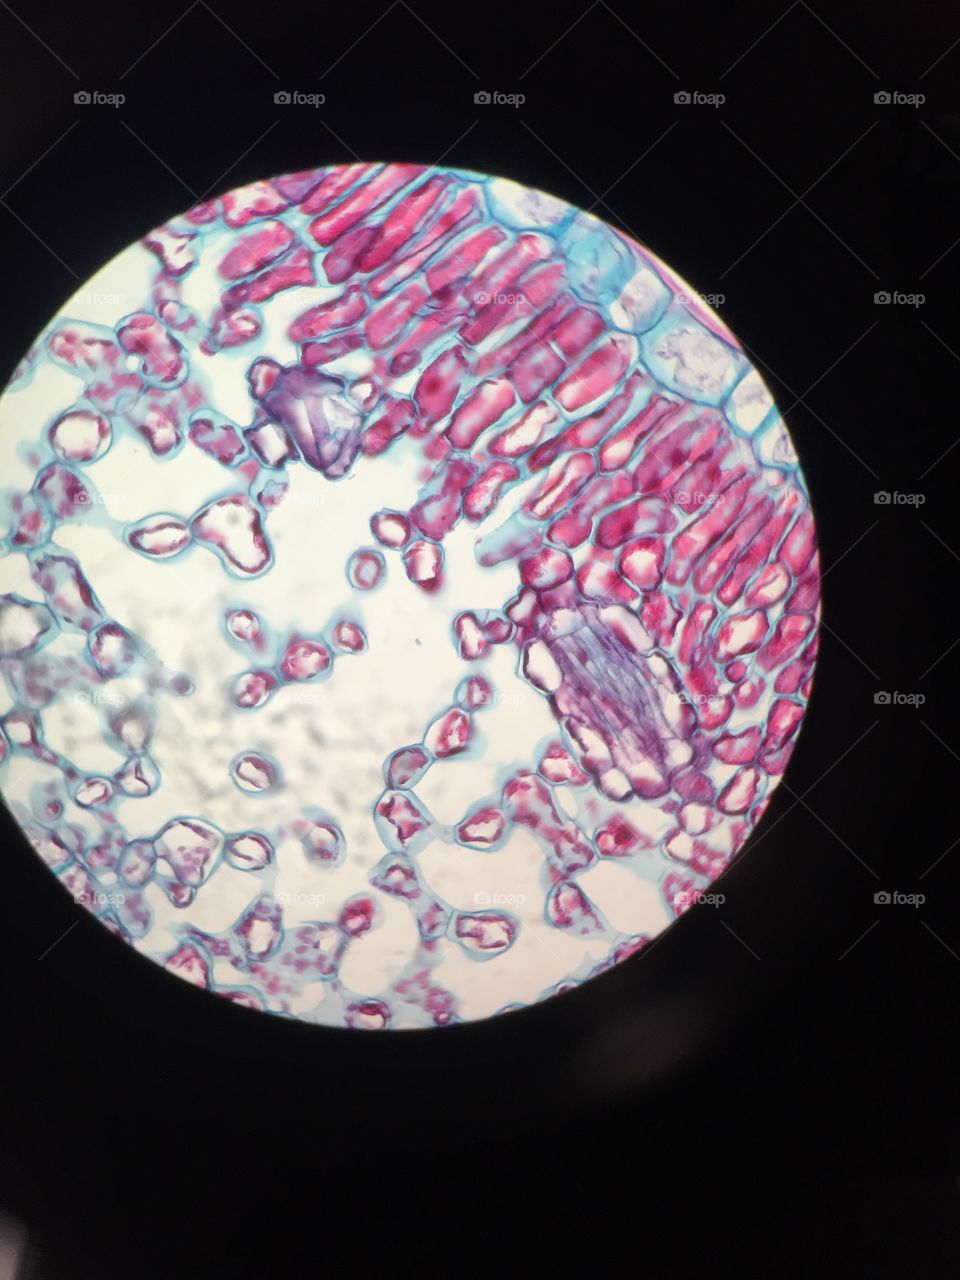 Microscopic bacterium 